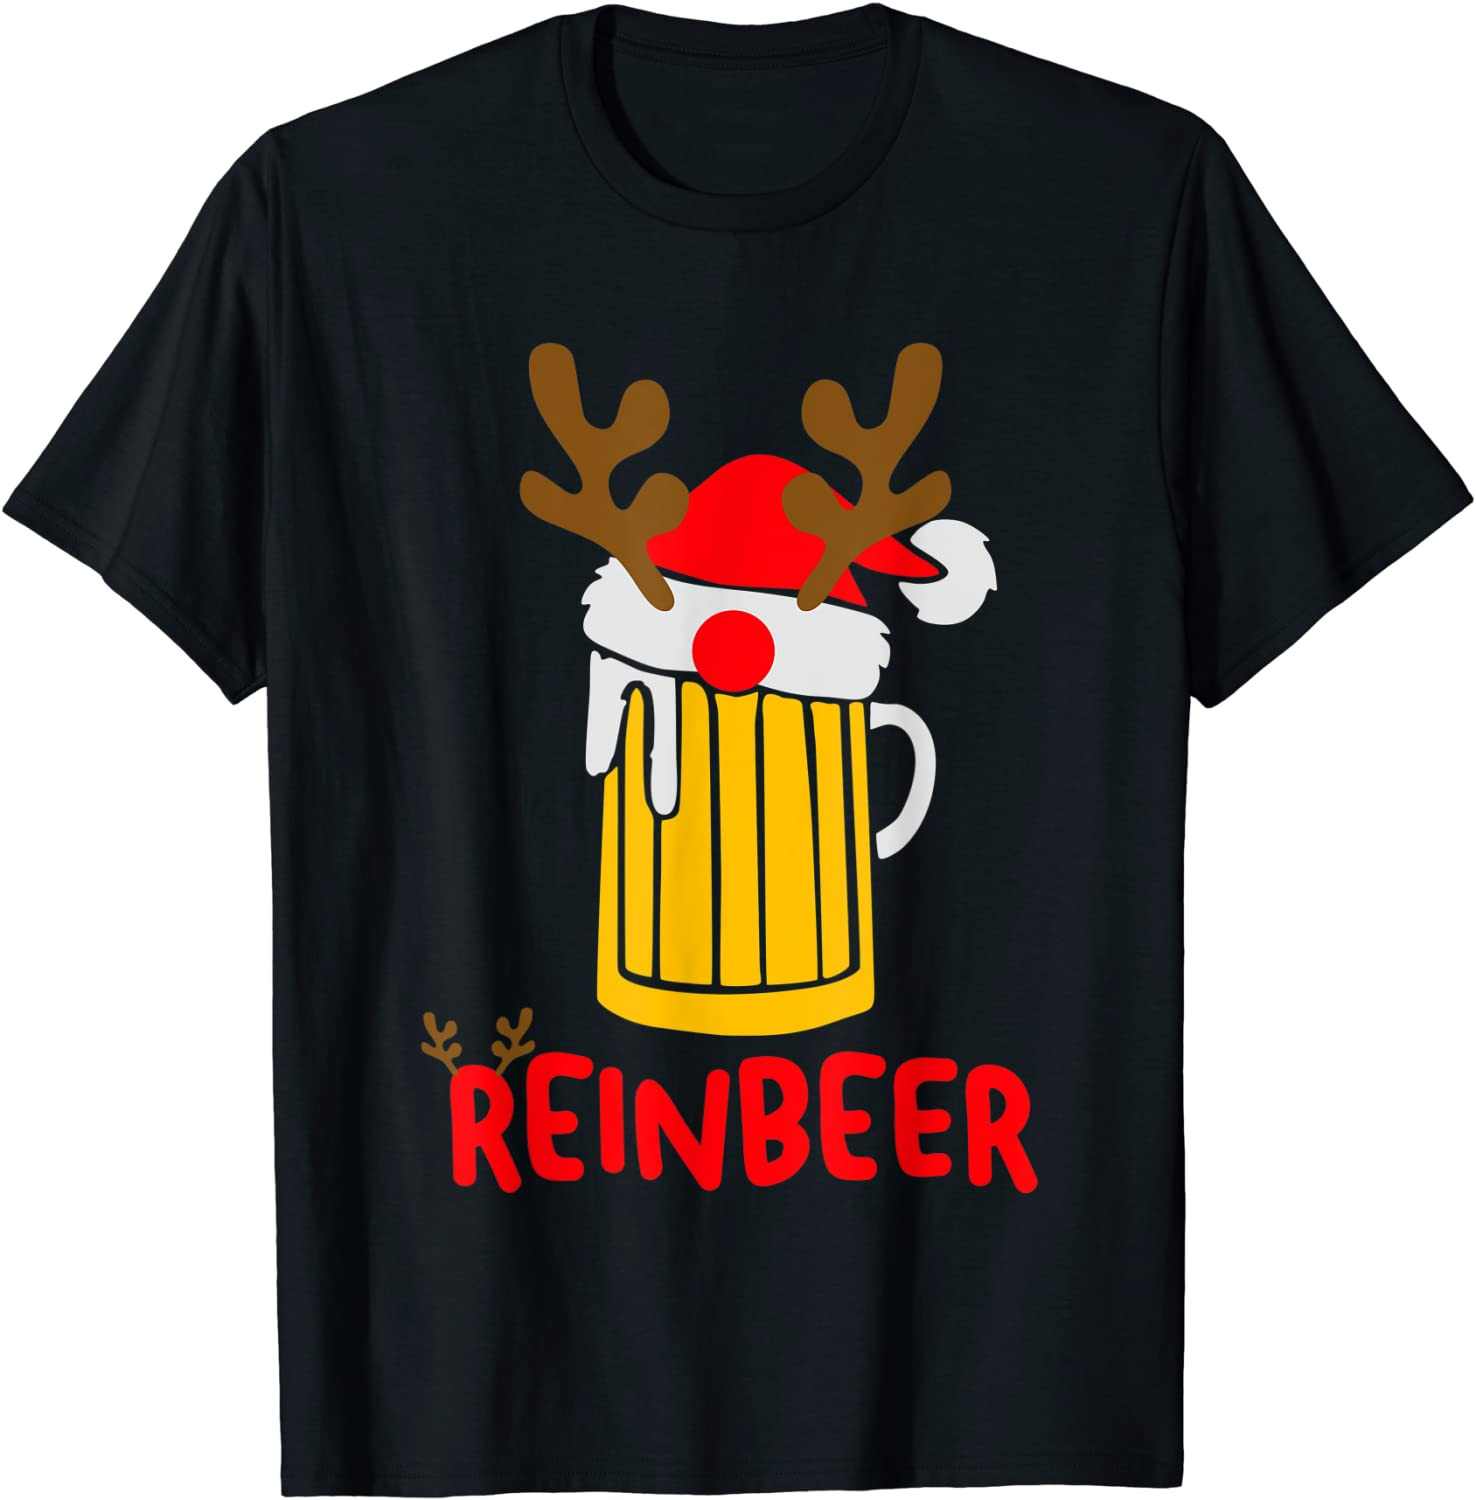 Reinbeer Santa Claus Reindeer Drinking Beer T-Shirt